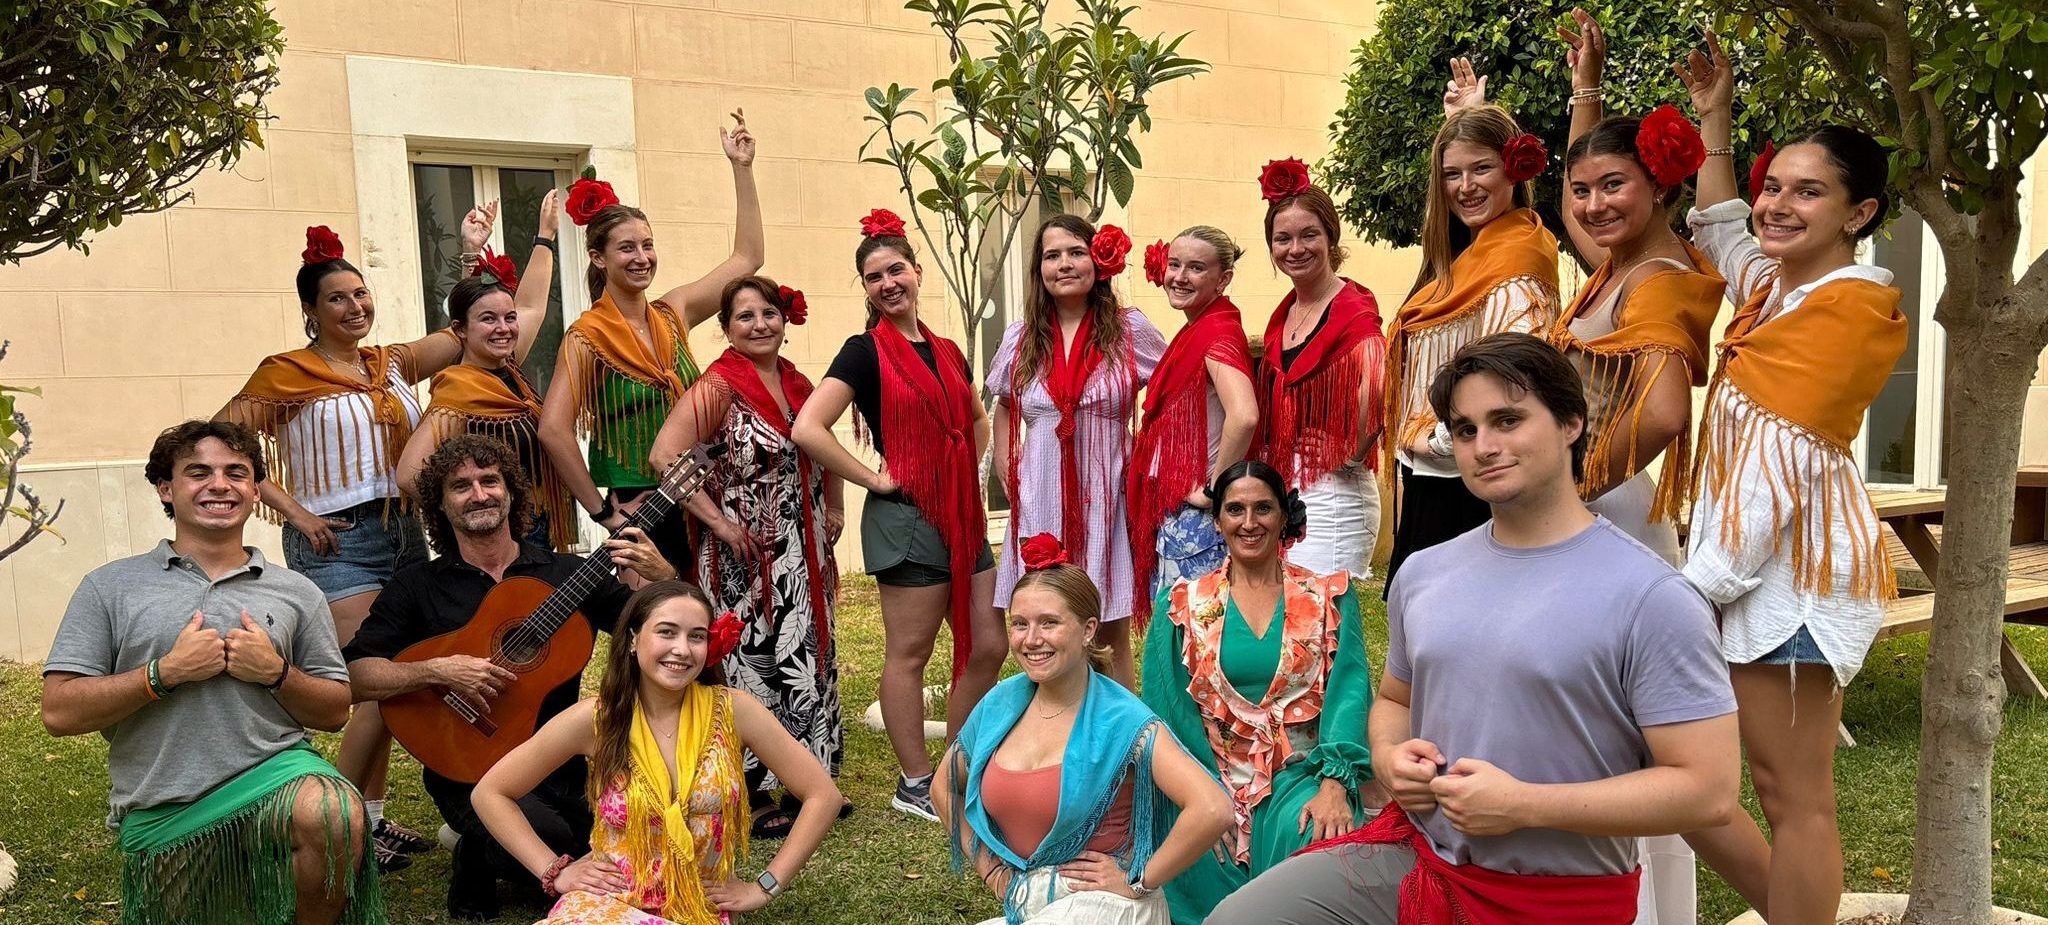 Estudiantes de Villanova University participan en un taller de flamenco dentro del marco de los programas internacionales del CSLM